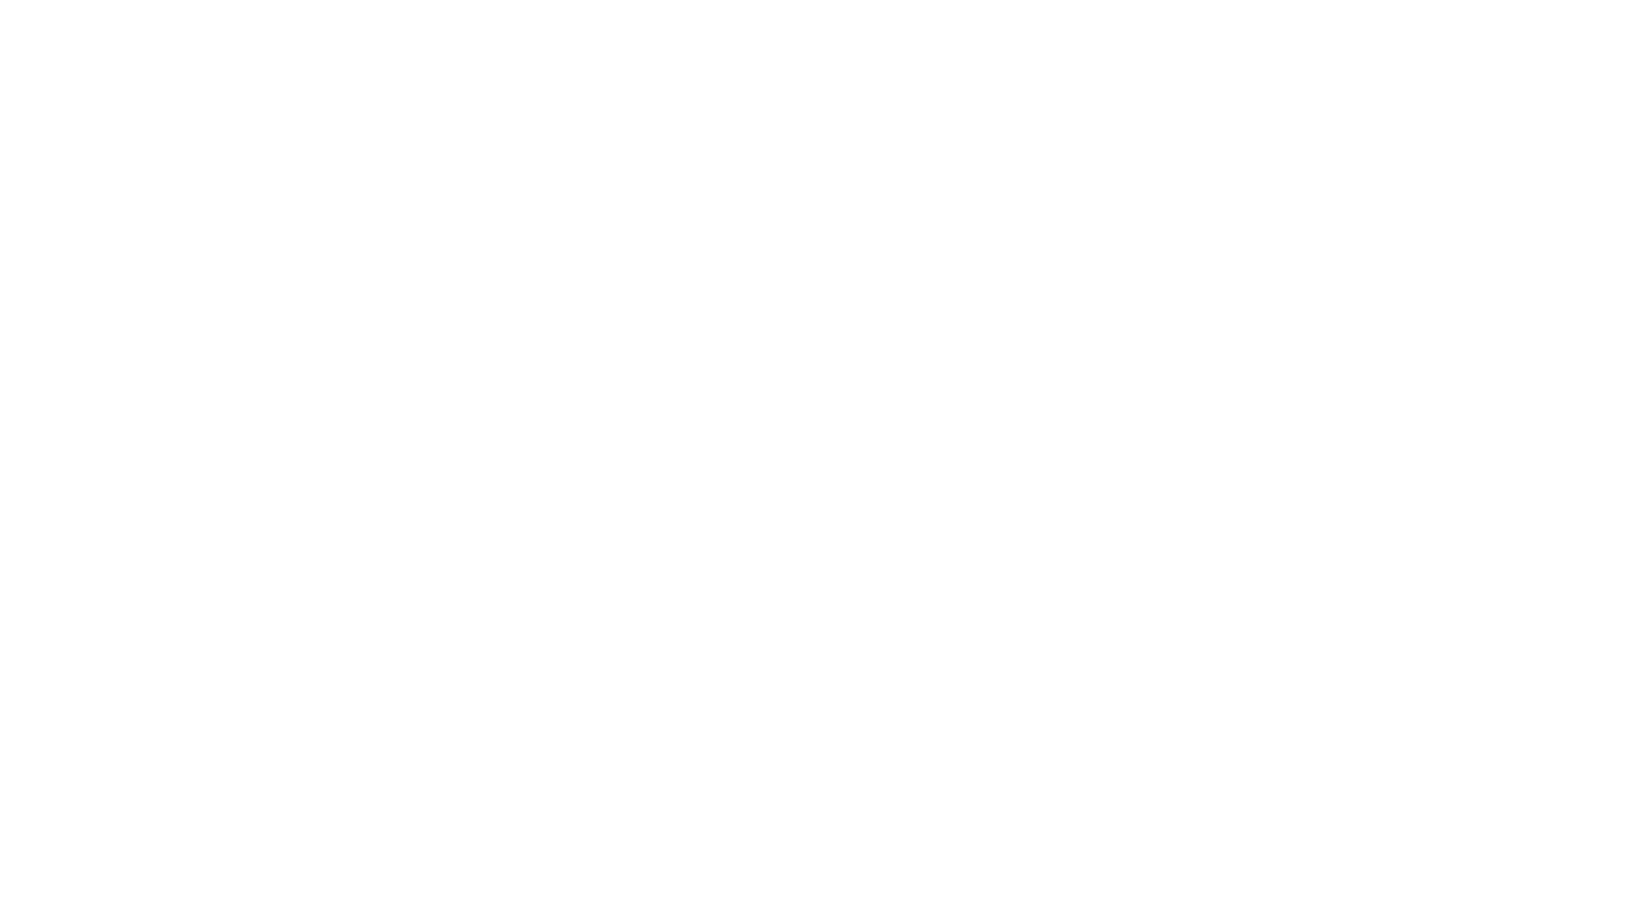 Heybo